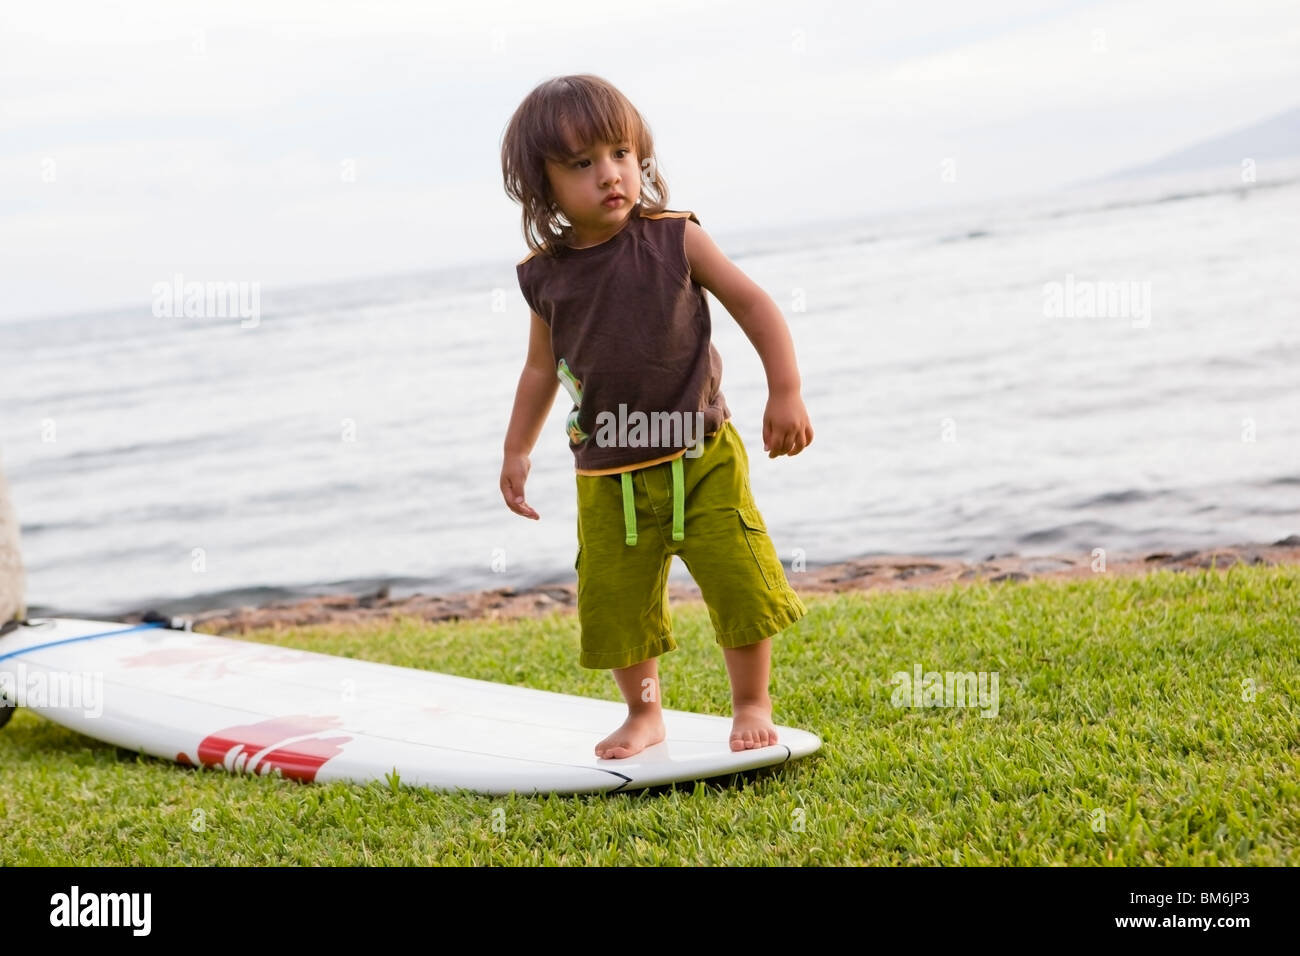 Jeune garçon on surfboard Banque D'Images